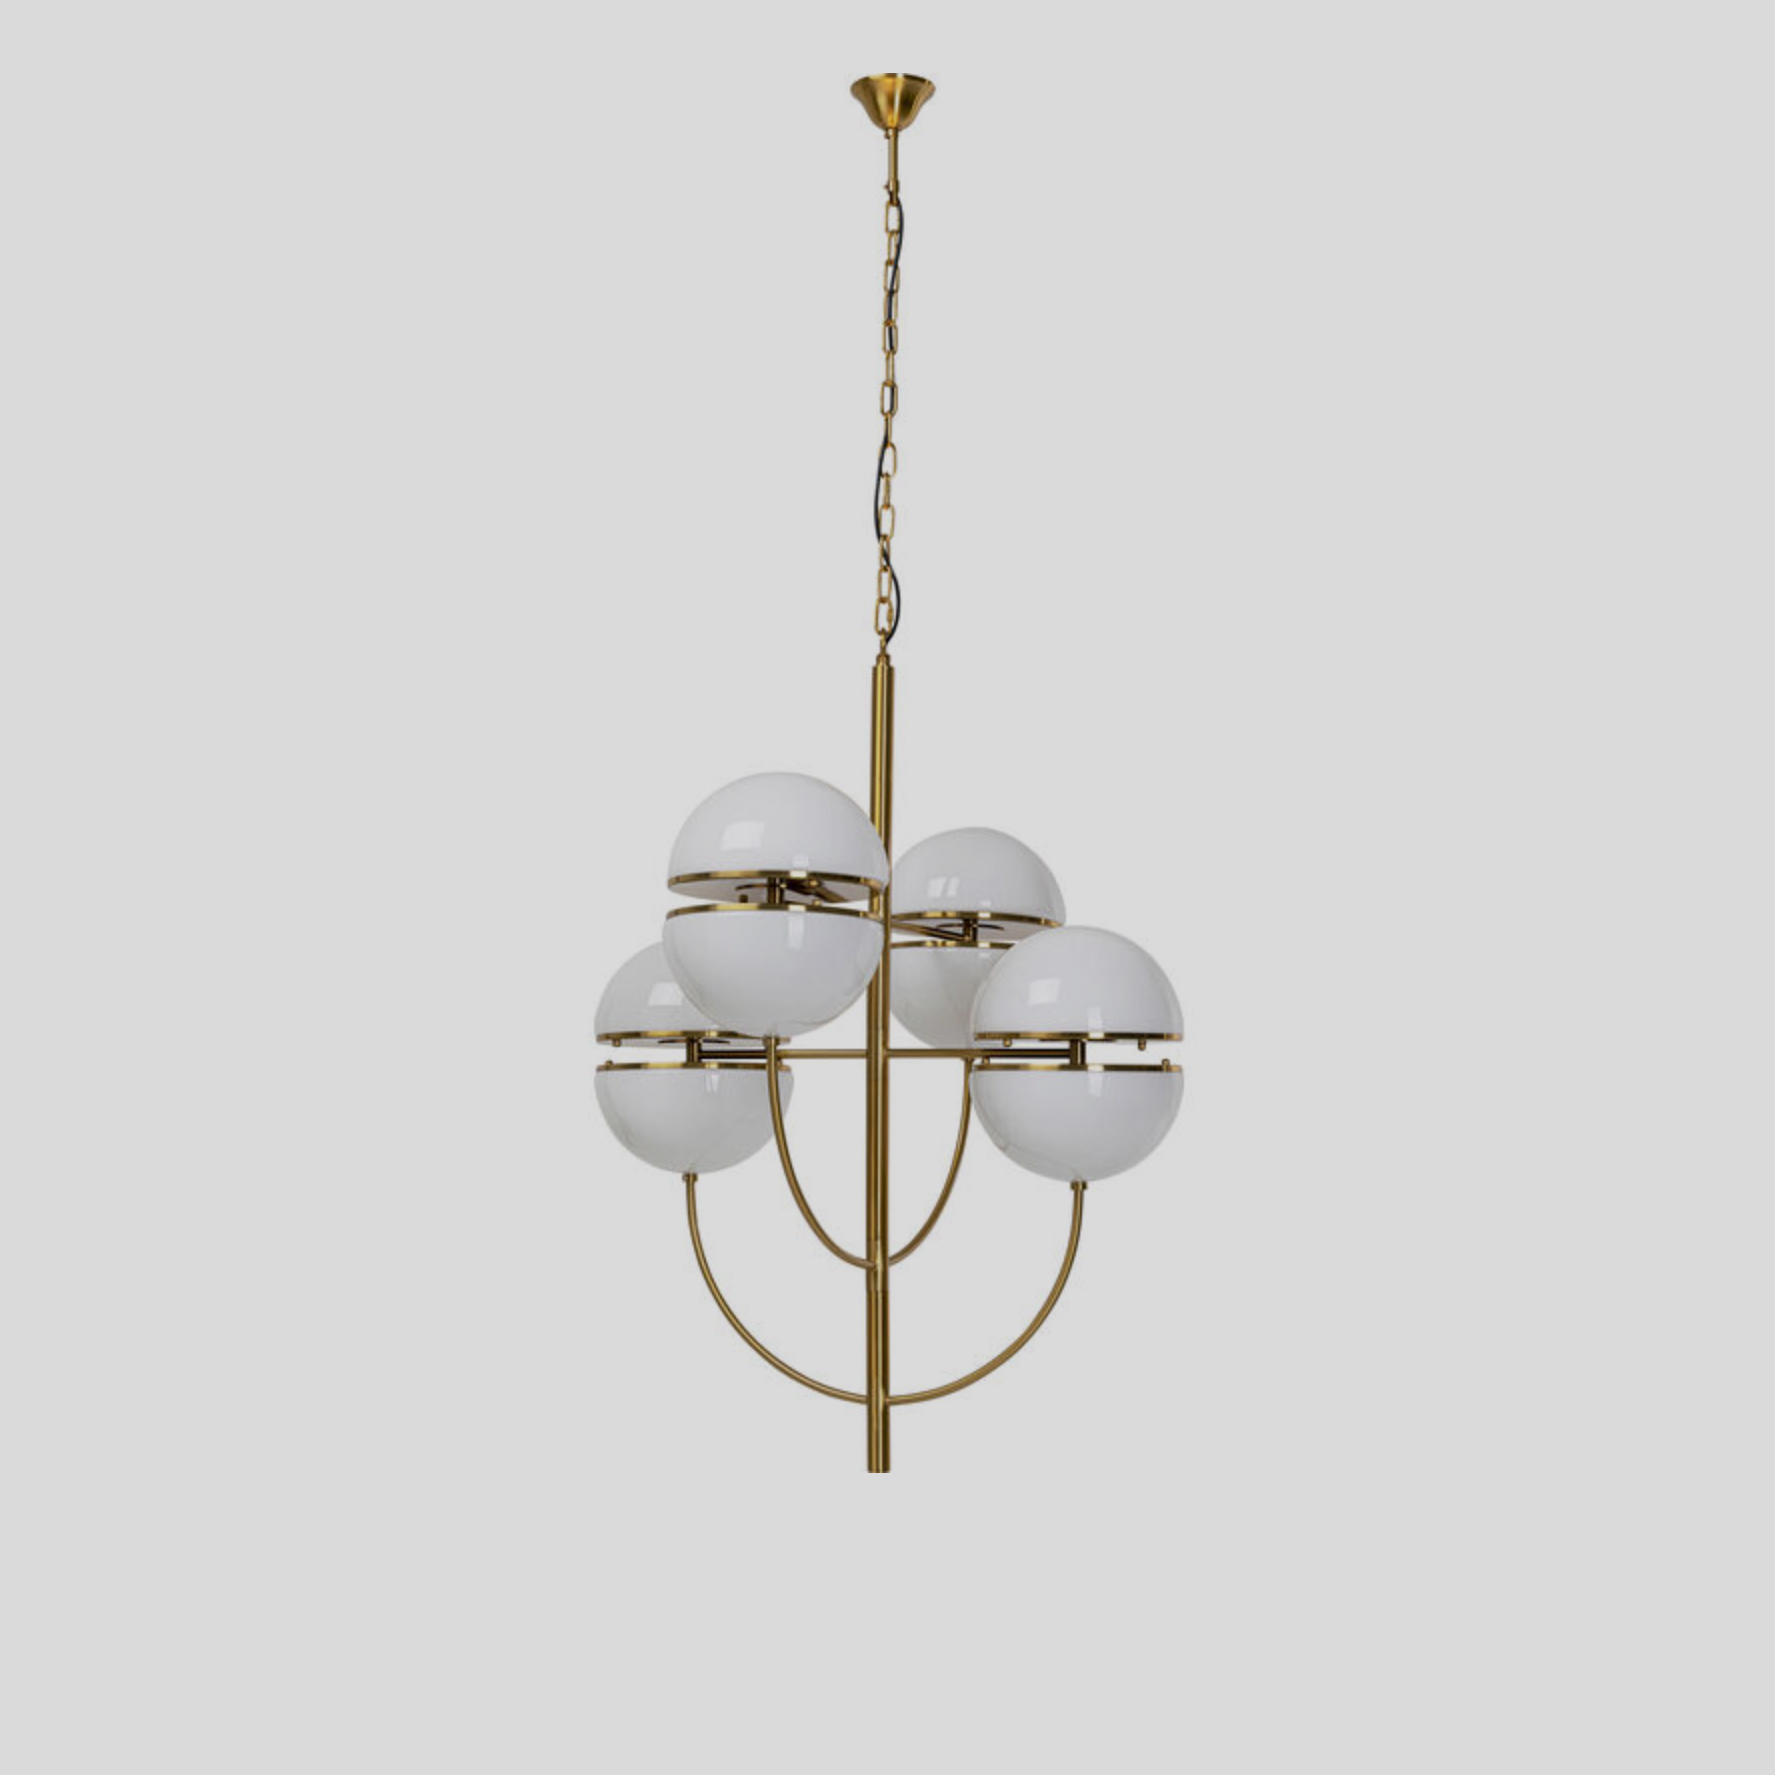 Hang deze art deco lamp met gouden details midden boven je eetkamer of bij je zithoek. 